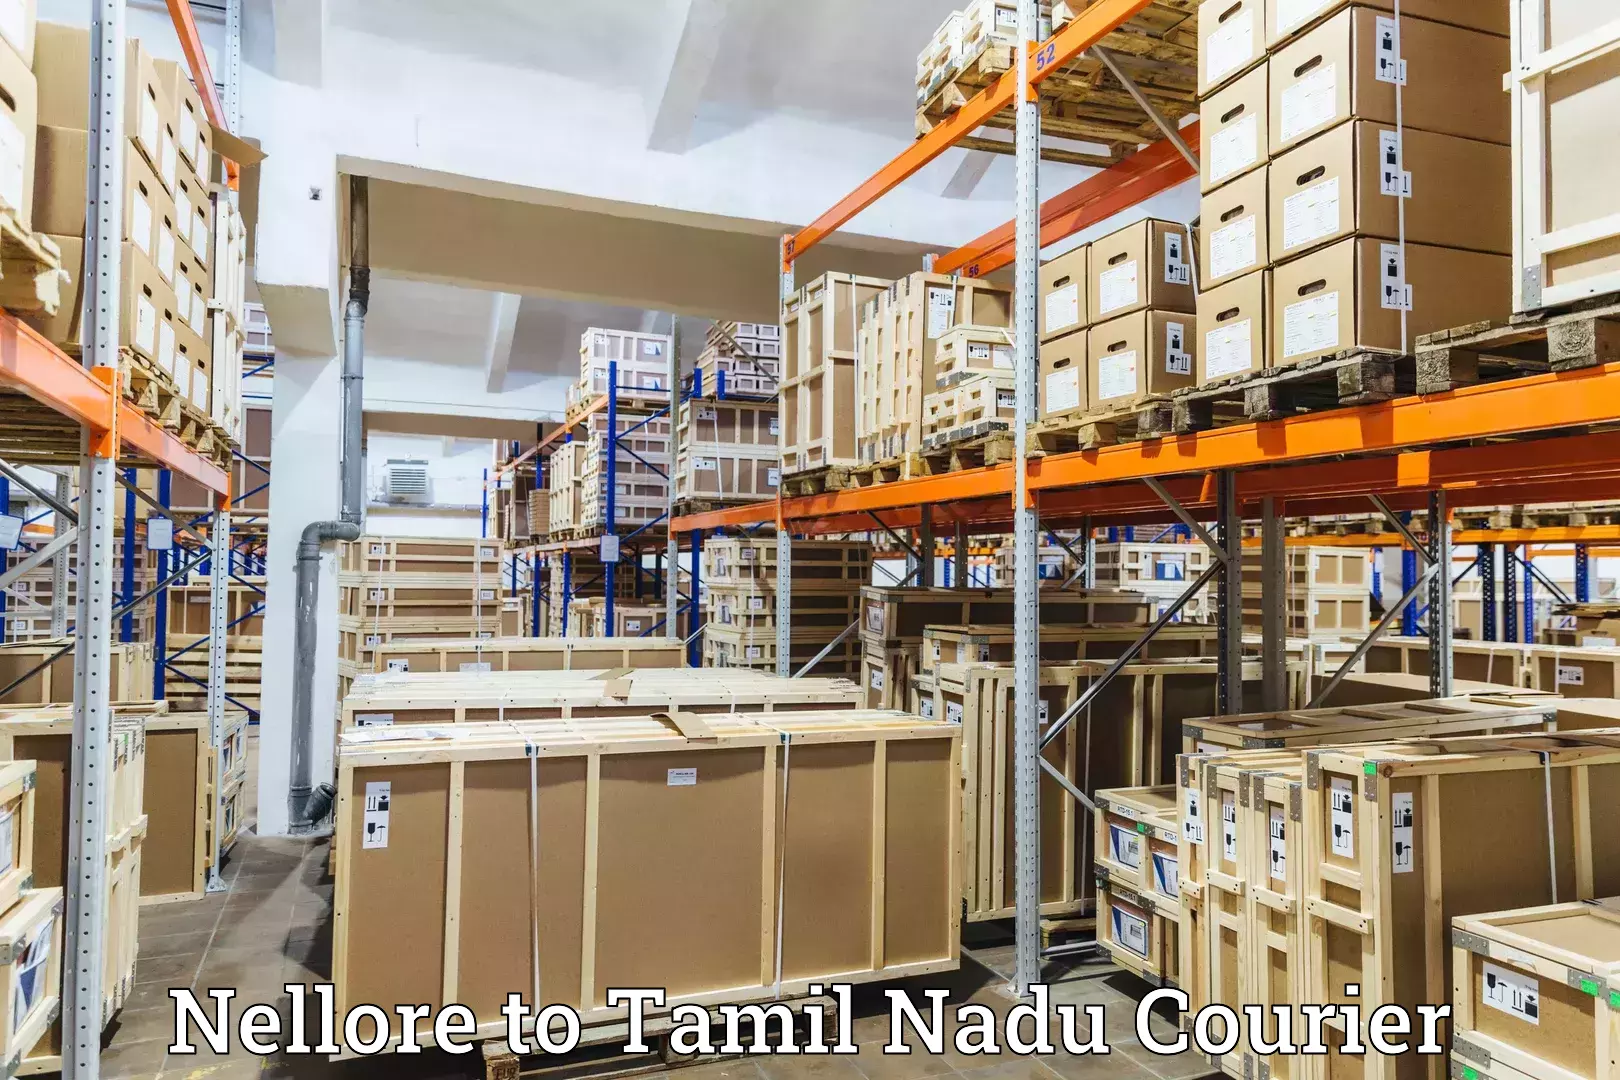 Customer-centric shipping Nellore to Viluppuram